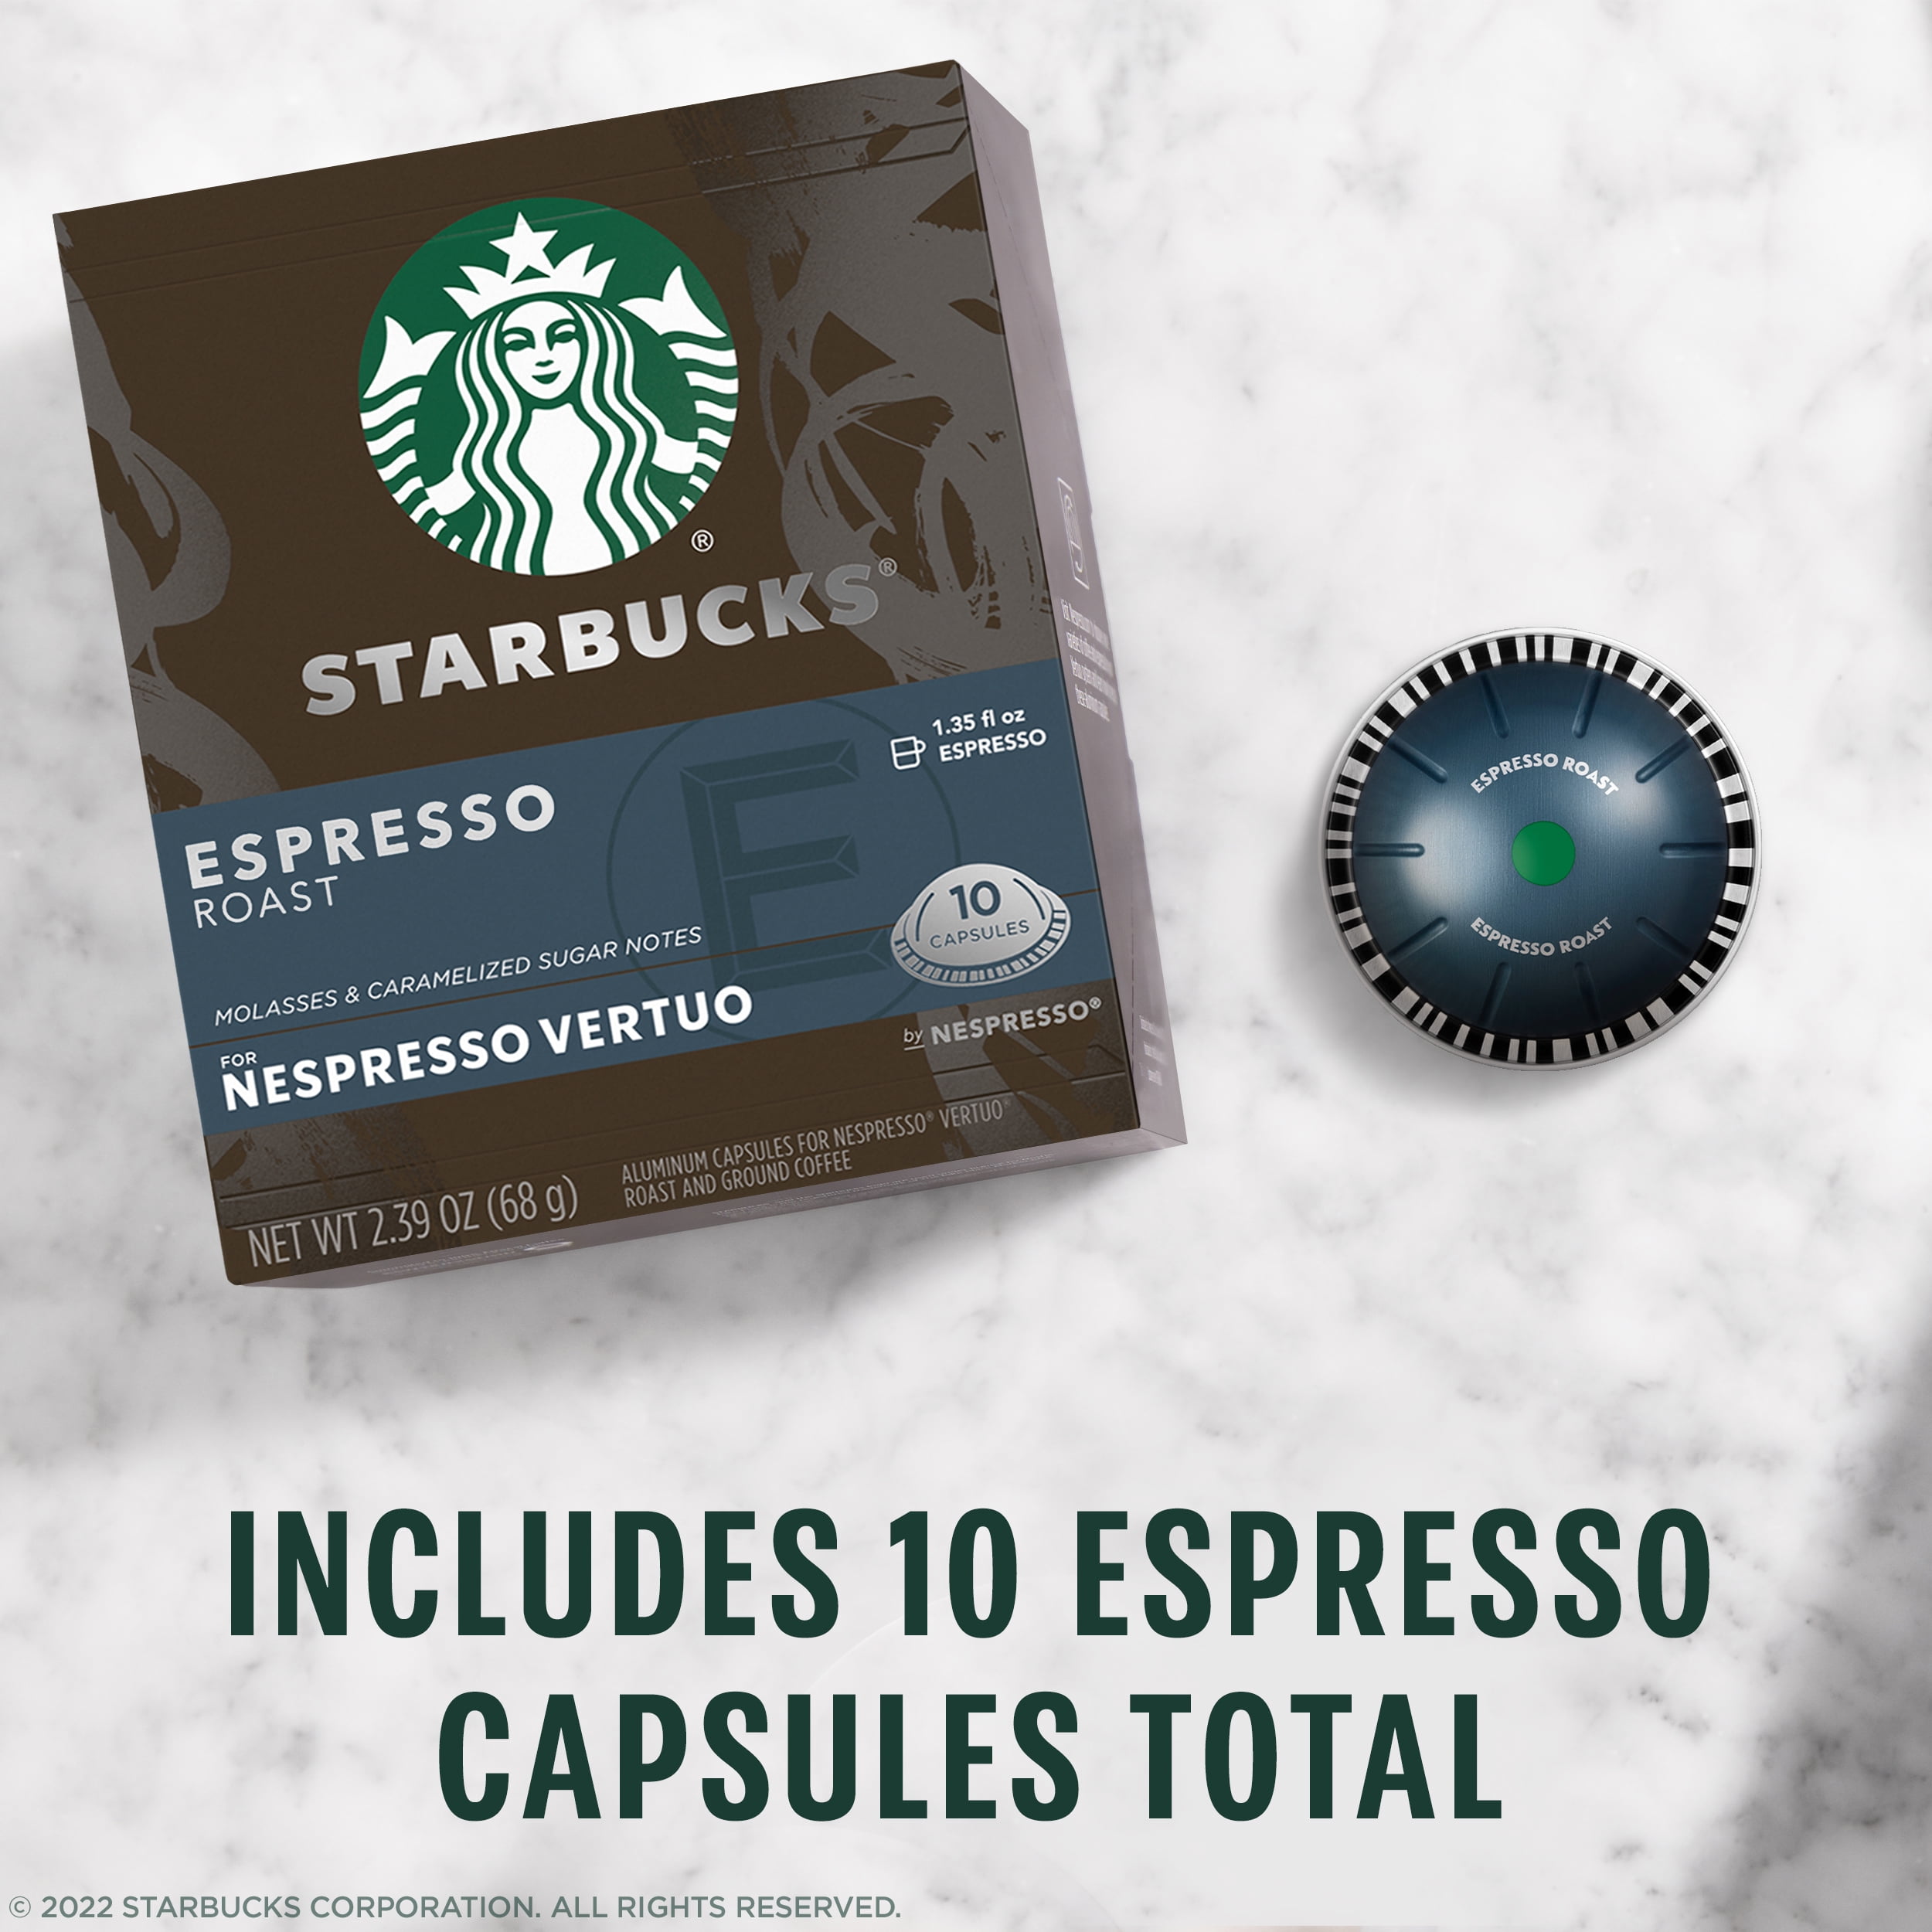 Starbucks Espresso Dark for Nespresso Vertuo Capsules, 10 Count Box - Walmart.com